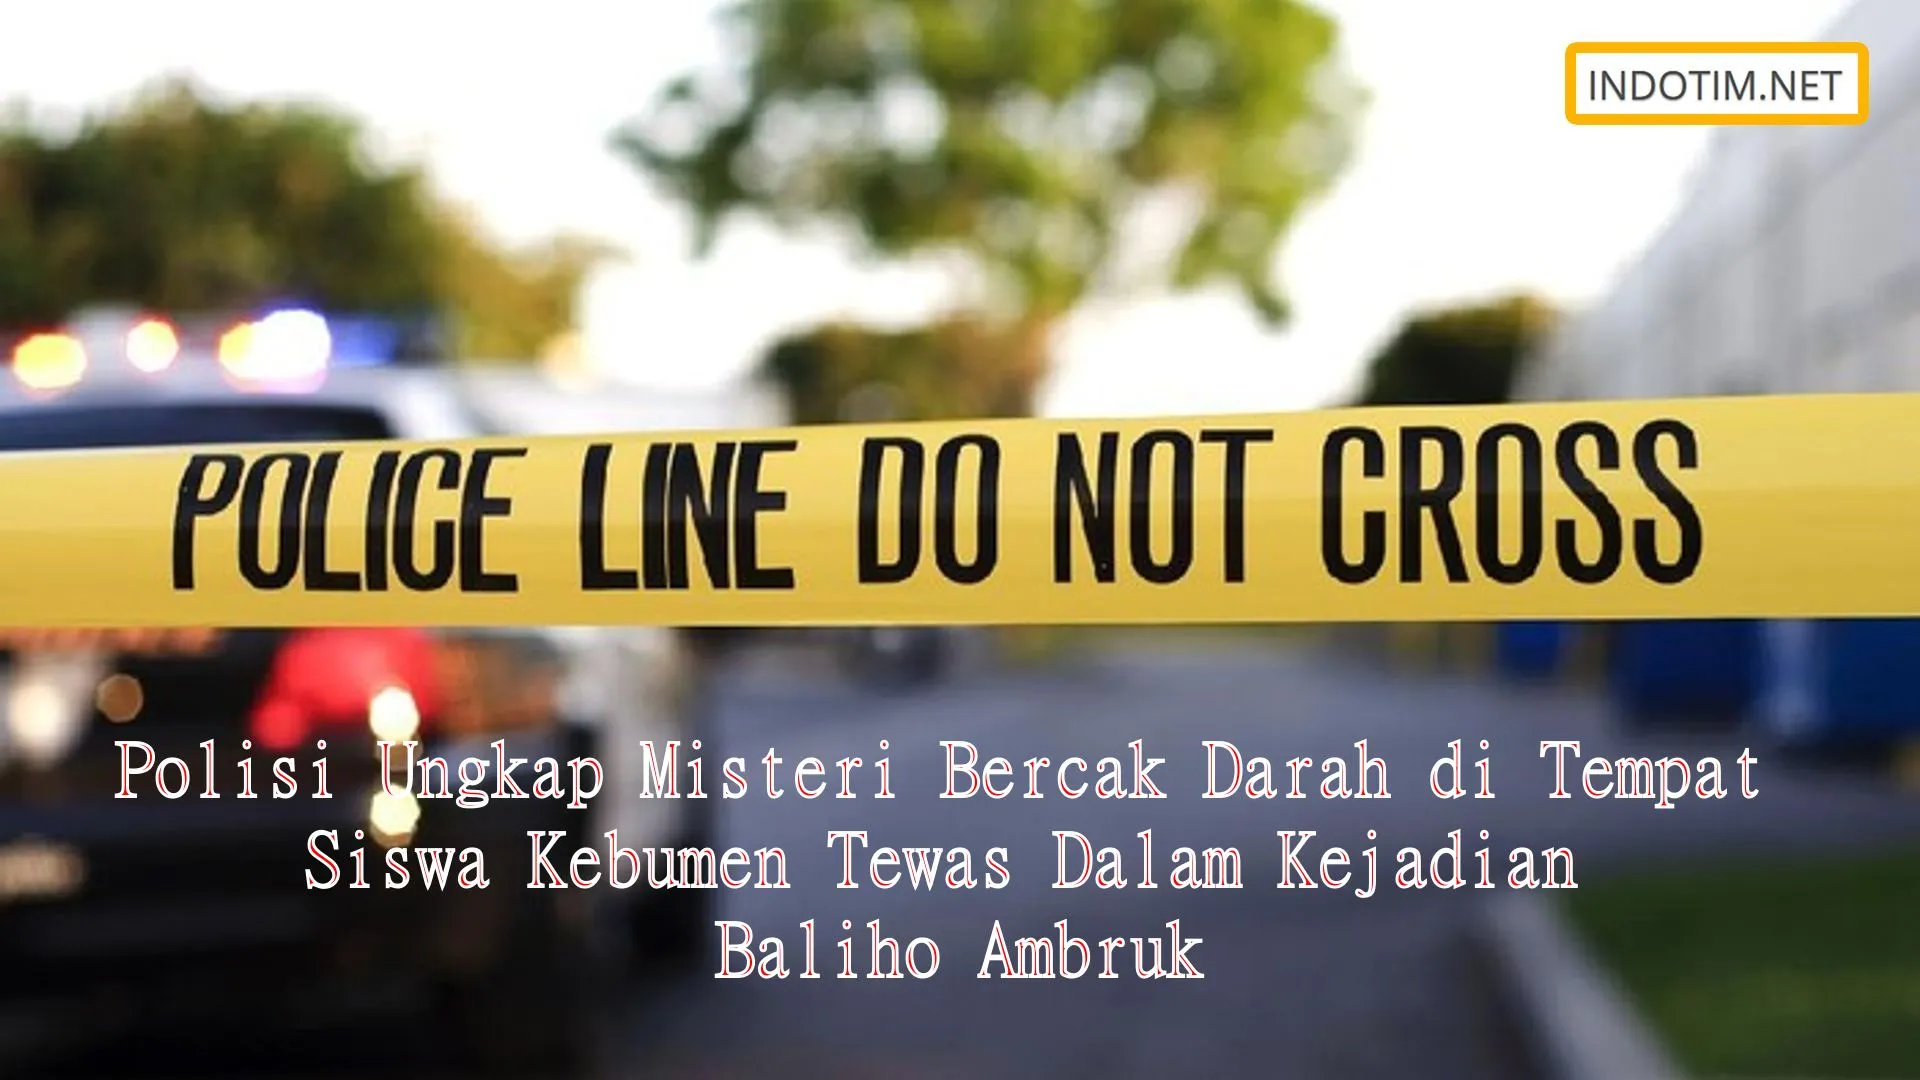 Polisi Ungkap Misteri Bercak Darah di Tempat Siswa Kebumen Tewas Dalam Kejadian Baliho Ambruk